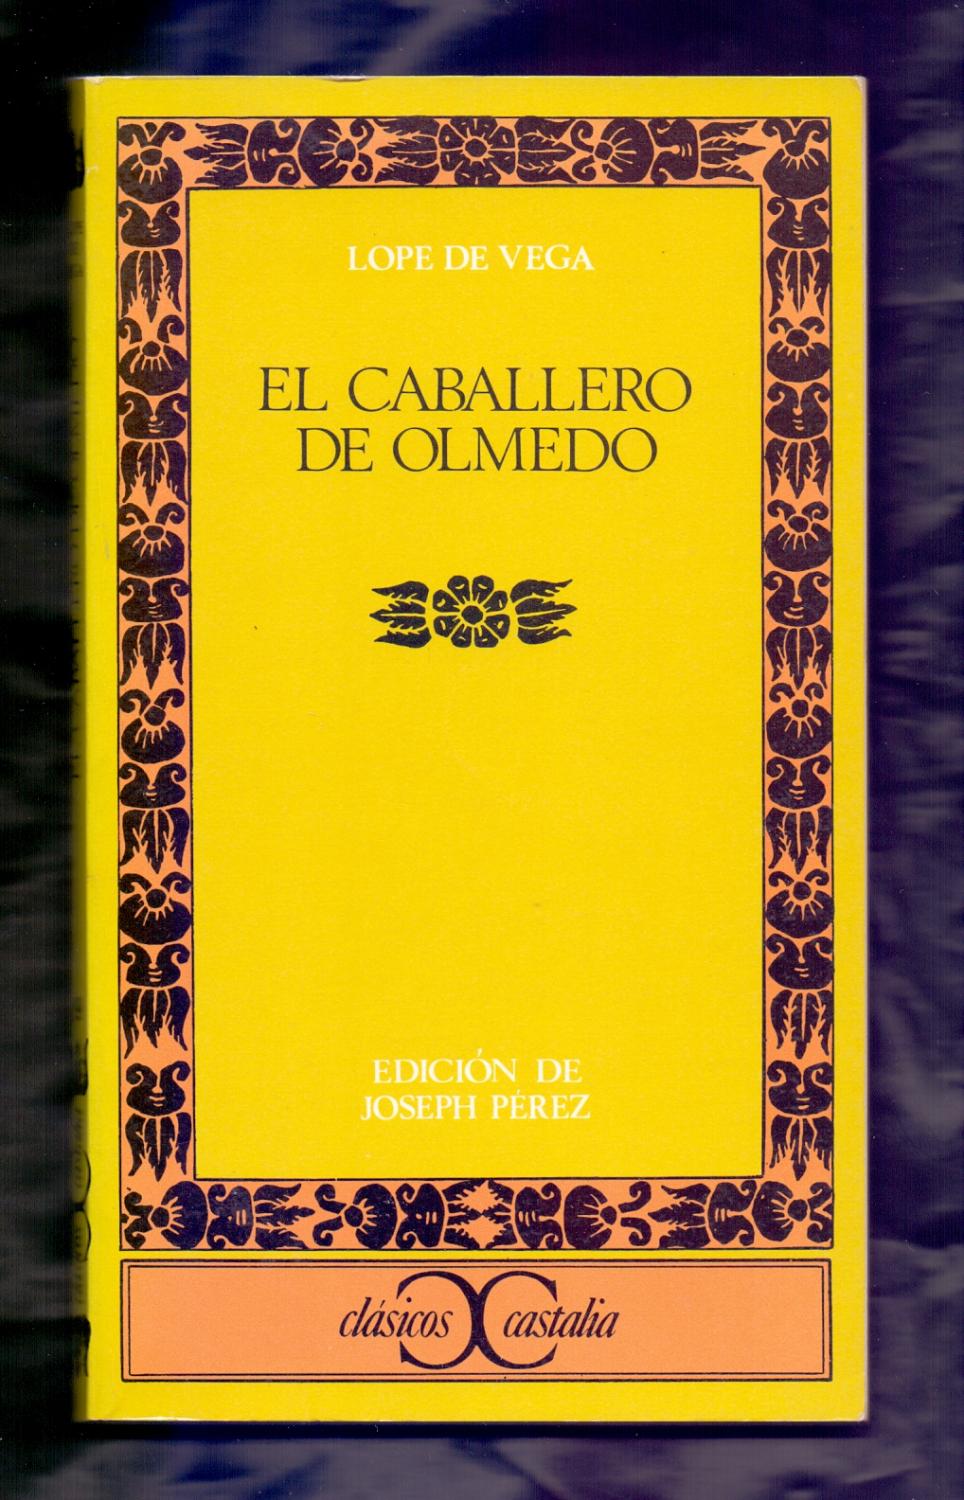 EL CABALLERO DE OLMEDO - Lope de Vega / Edicion, introduccion y notas de Joseph Pérez